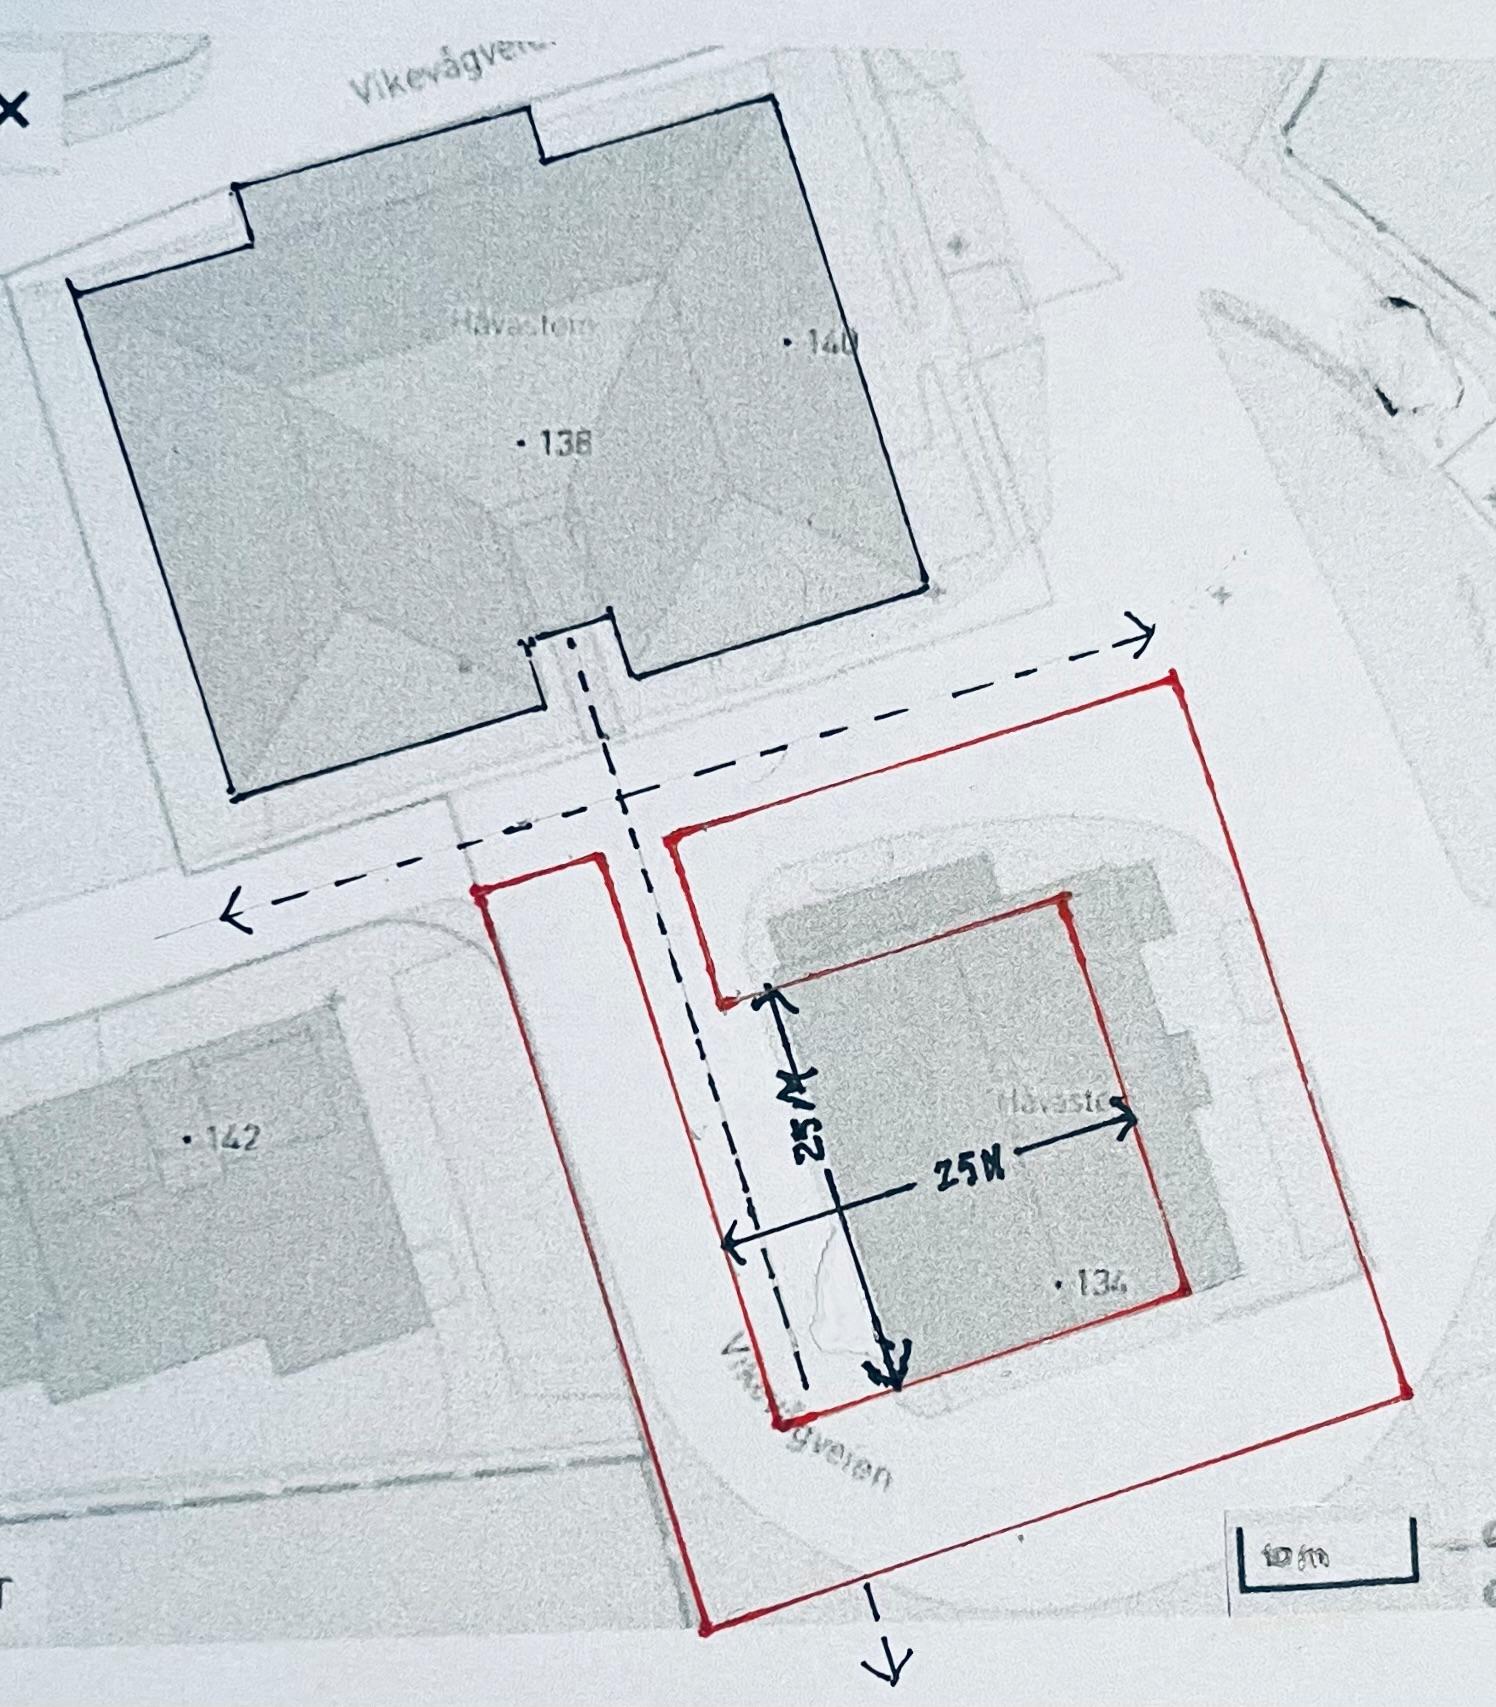 Vikevåg trenger en plass avgrenset med en lav bebyggelse med 2- 3etasjer. Intim men ikke for liten, romslig men ikke for stor. 25 x 25 meter med atkomst i aksen fra hovedinngangen til Kulturhuset.